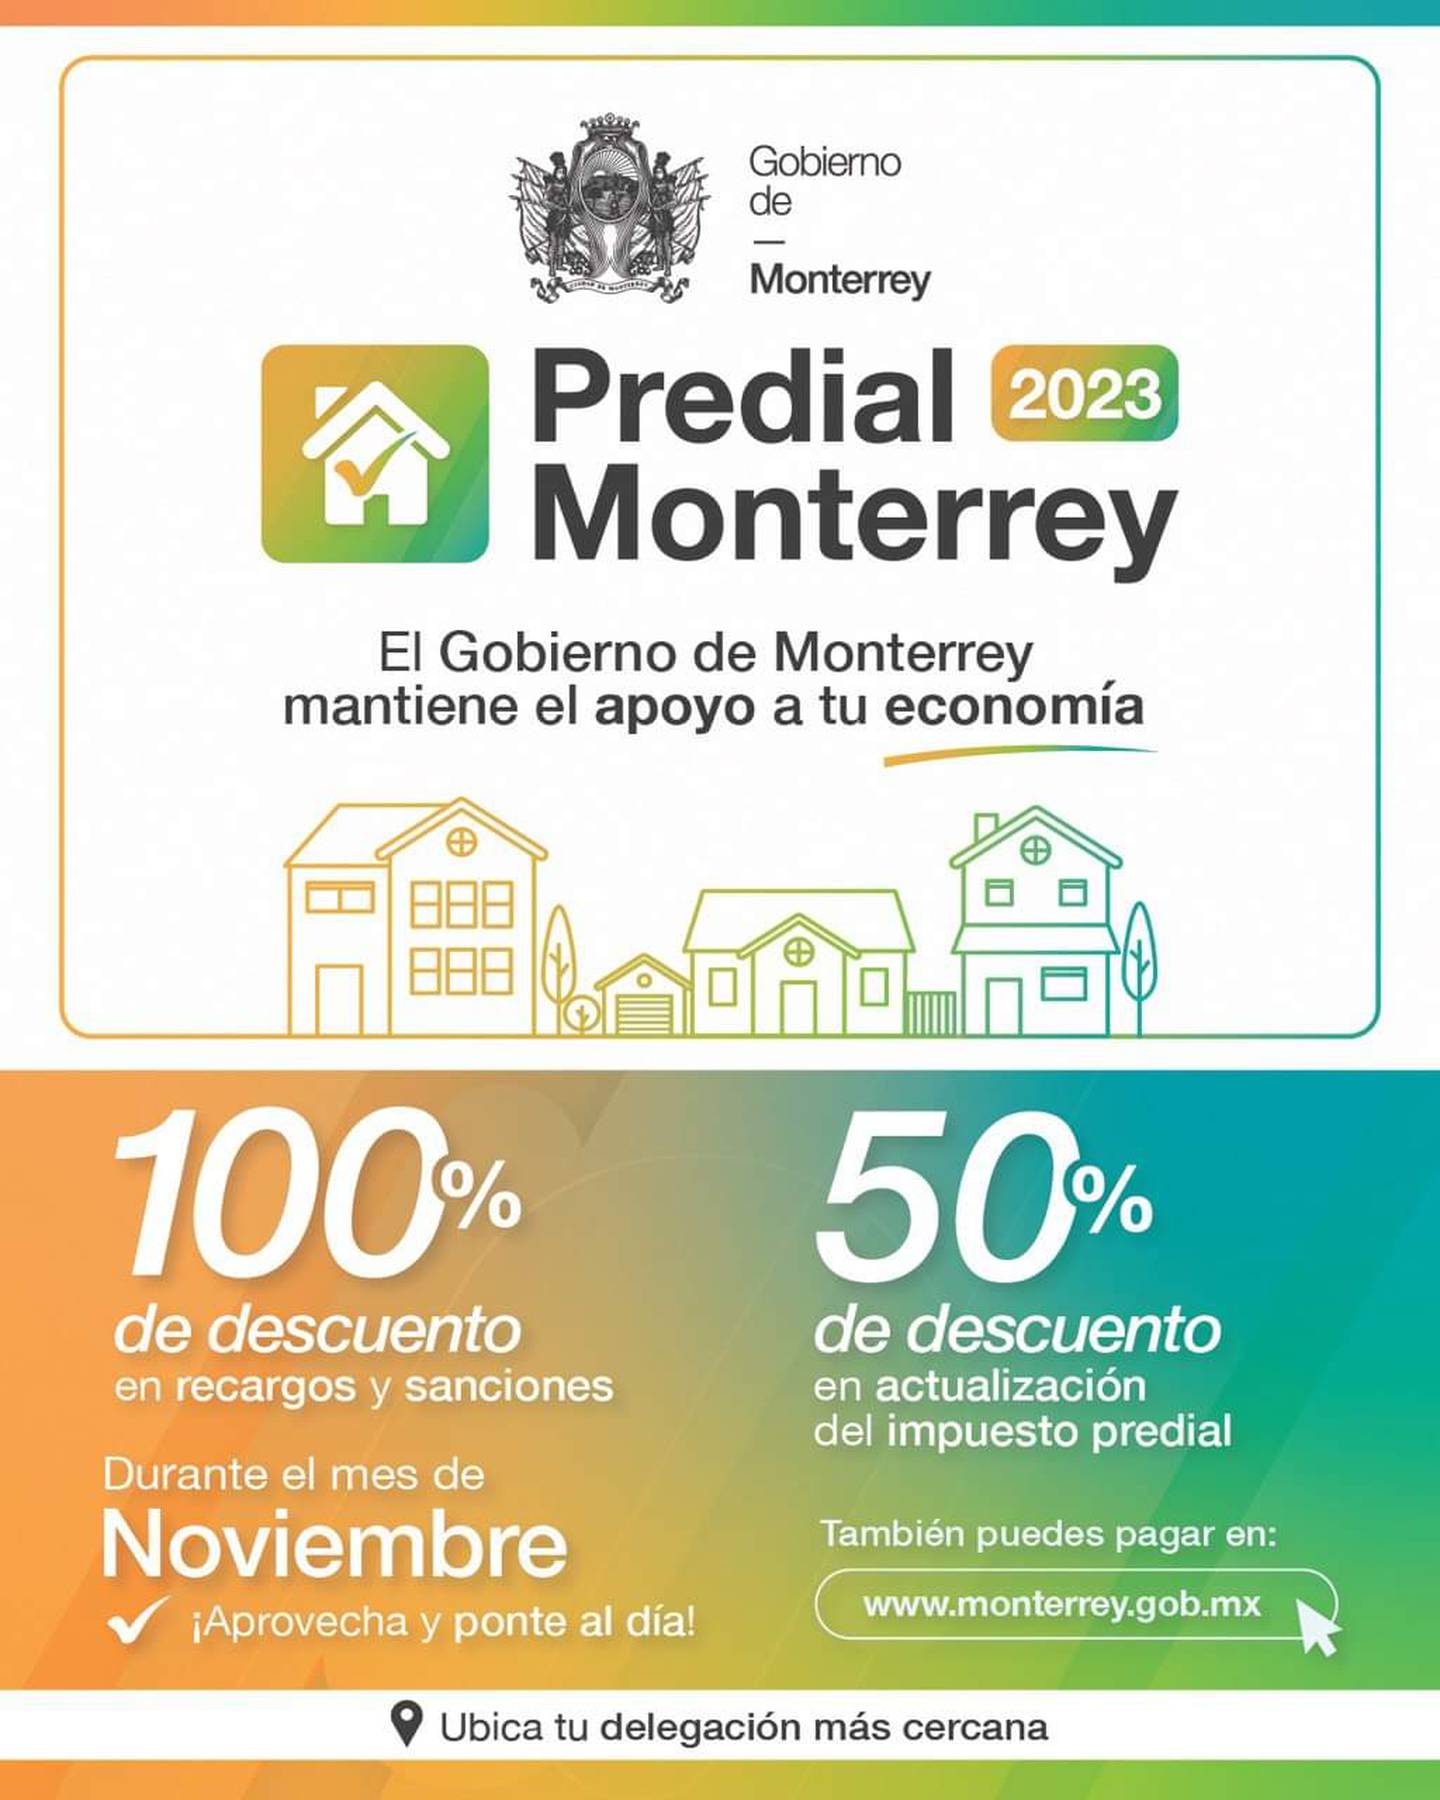 Monterrey da buenos descuentos en el pago del predial.